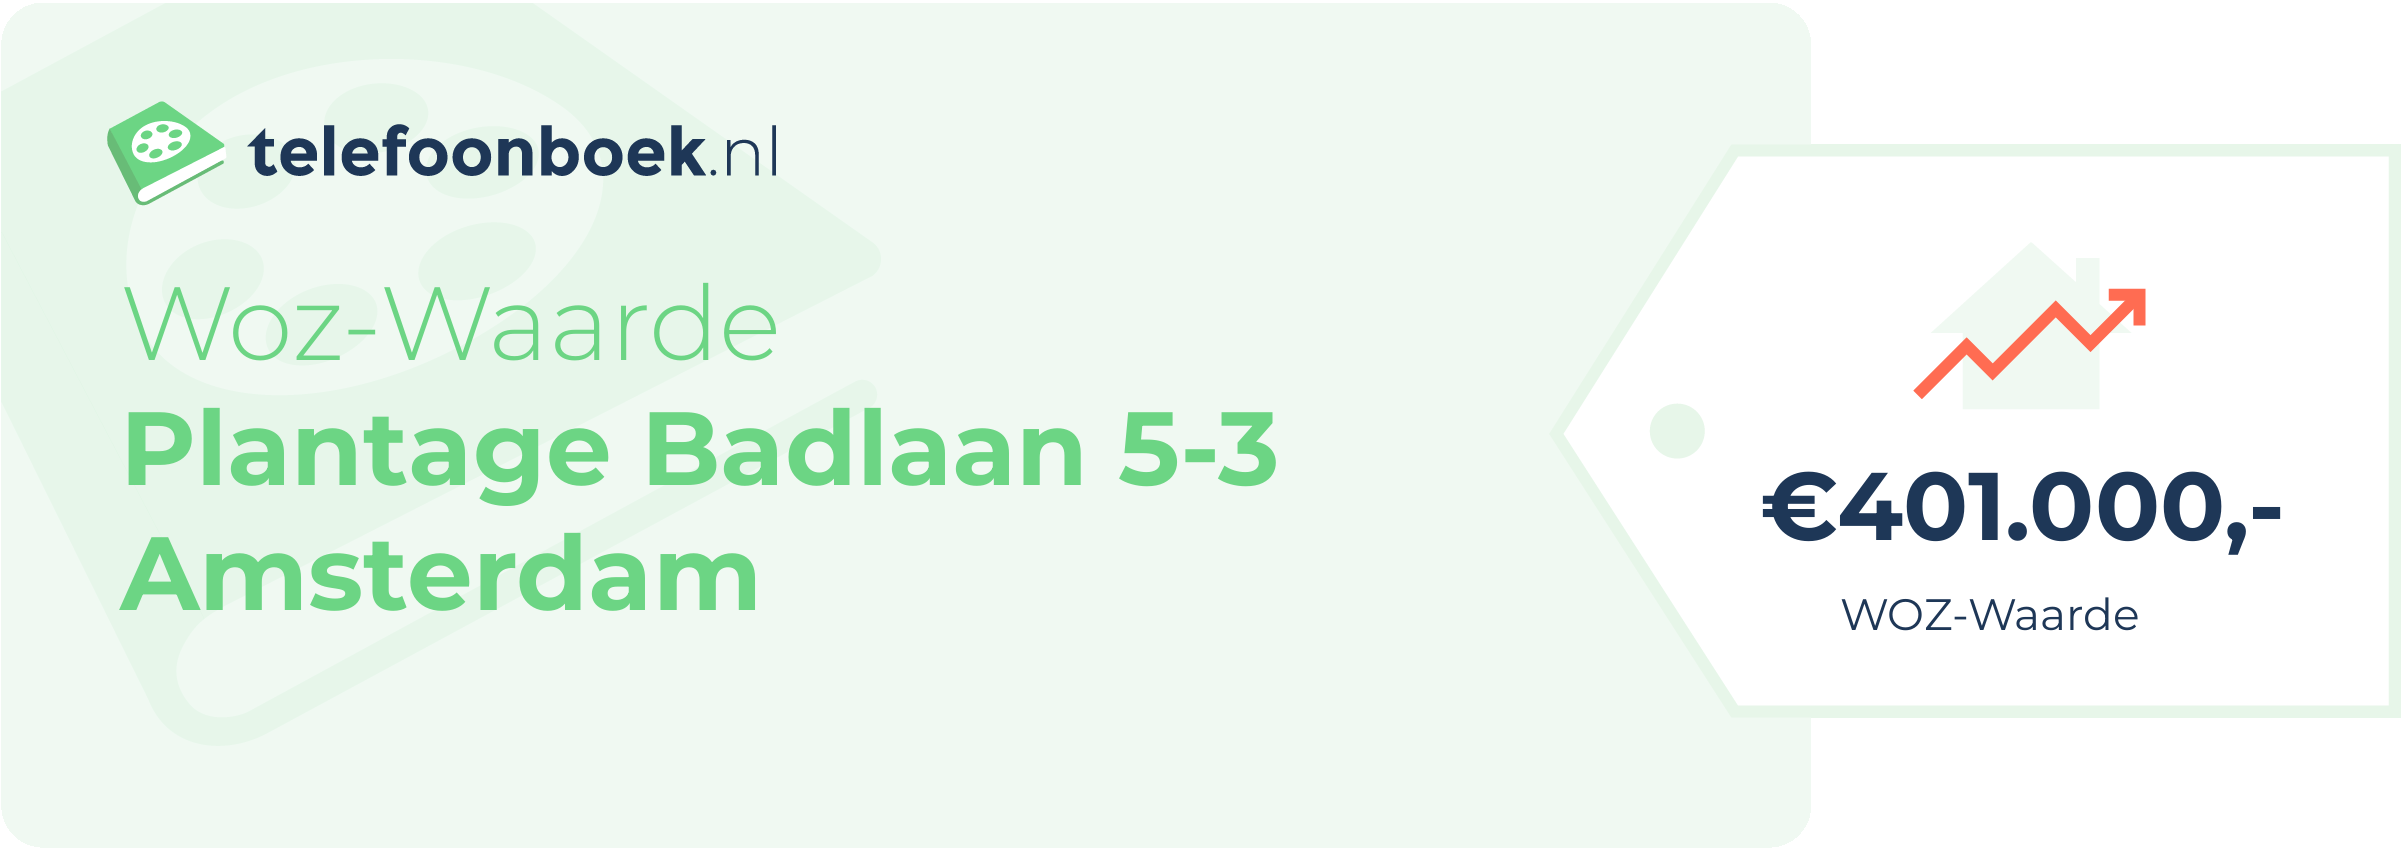 WOZ-waarde Plantage Badlaan 5-3 Amsterdam